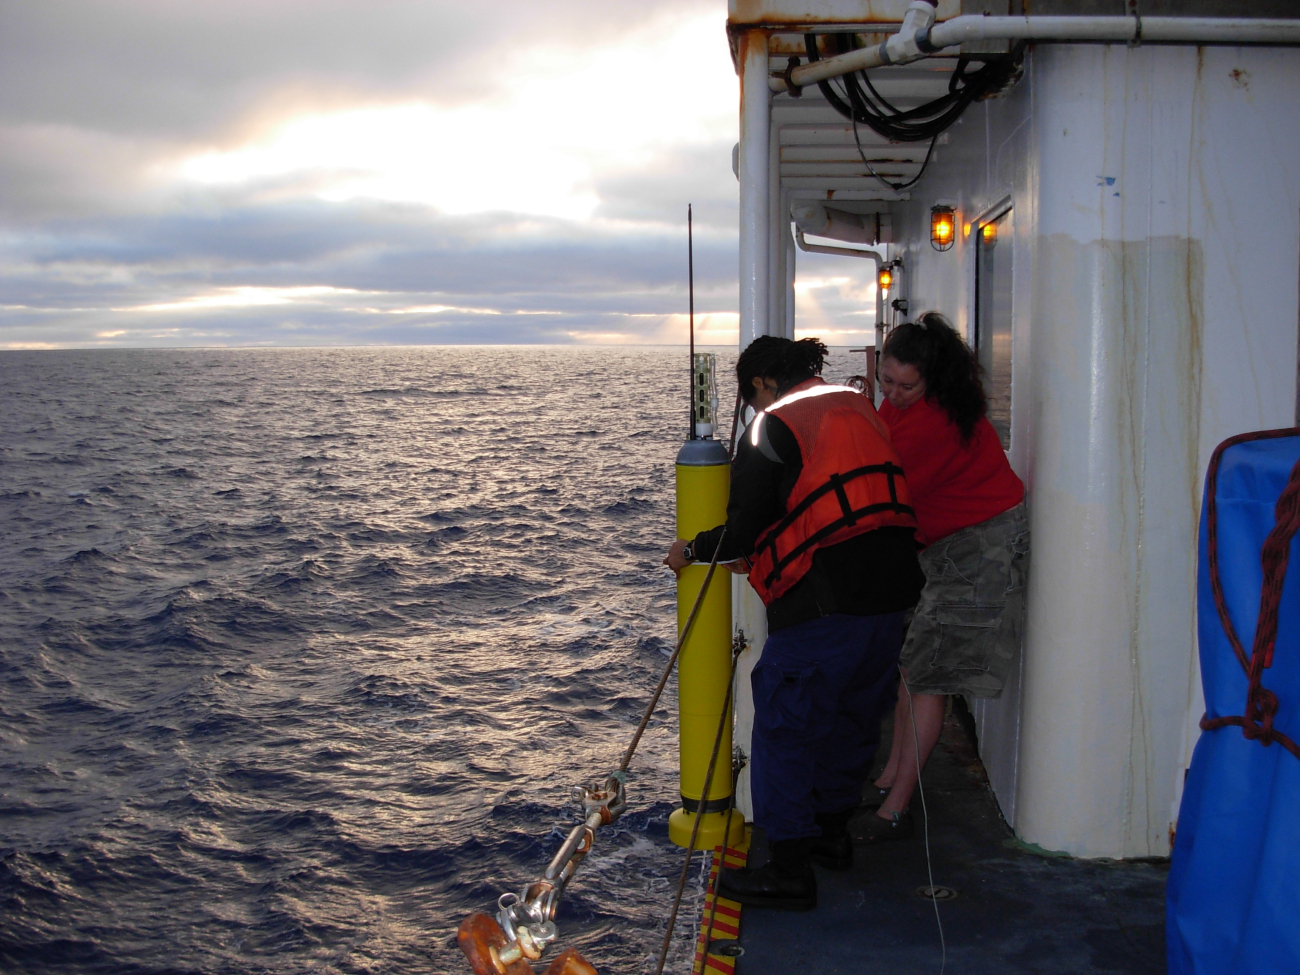 Working on the NOAA Ship KA'IMIMOANA (R333)